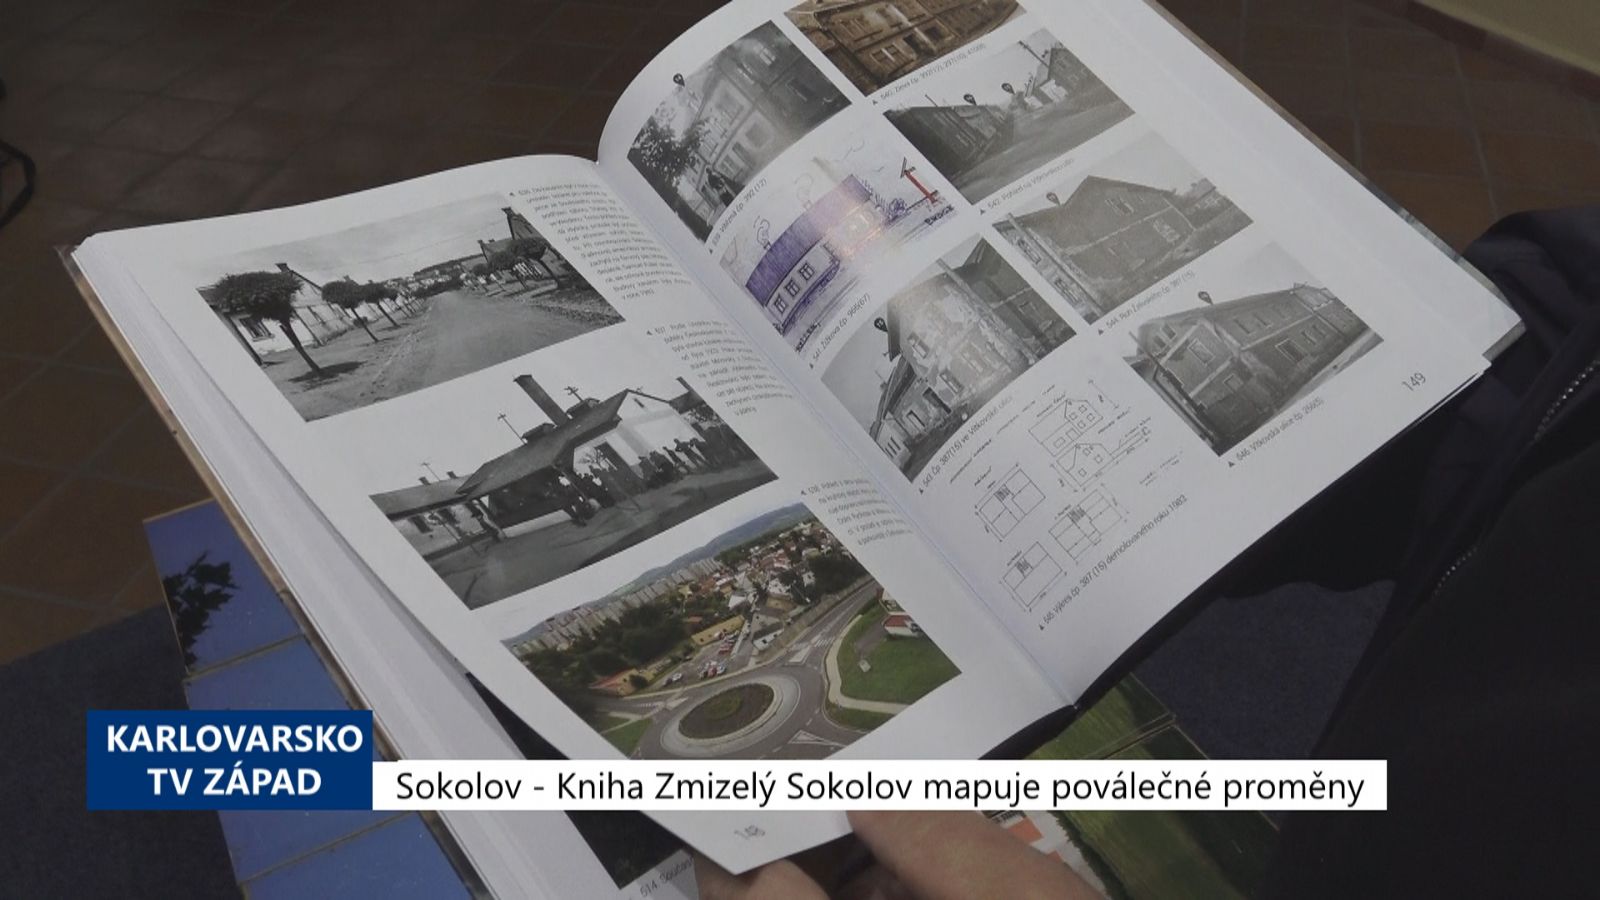 Sokolov: Kniha Zmizelý Sokolov mapuje poválečné proměny (TV Západ)